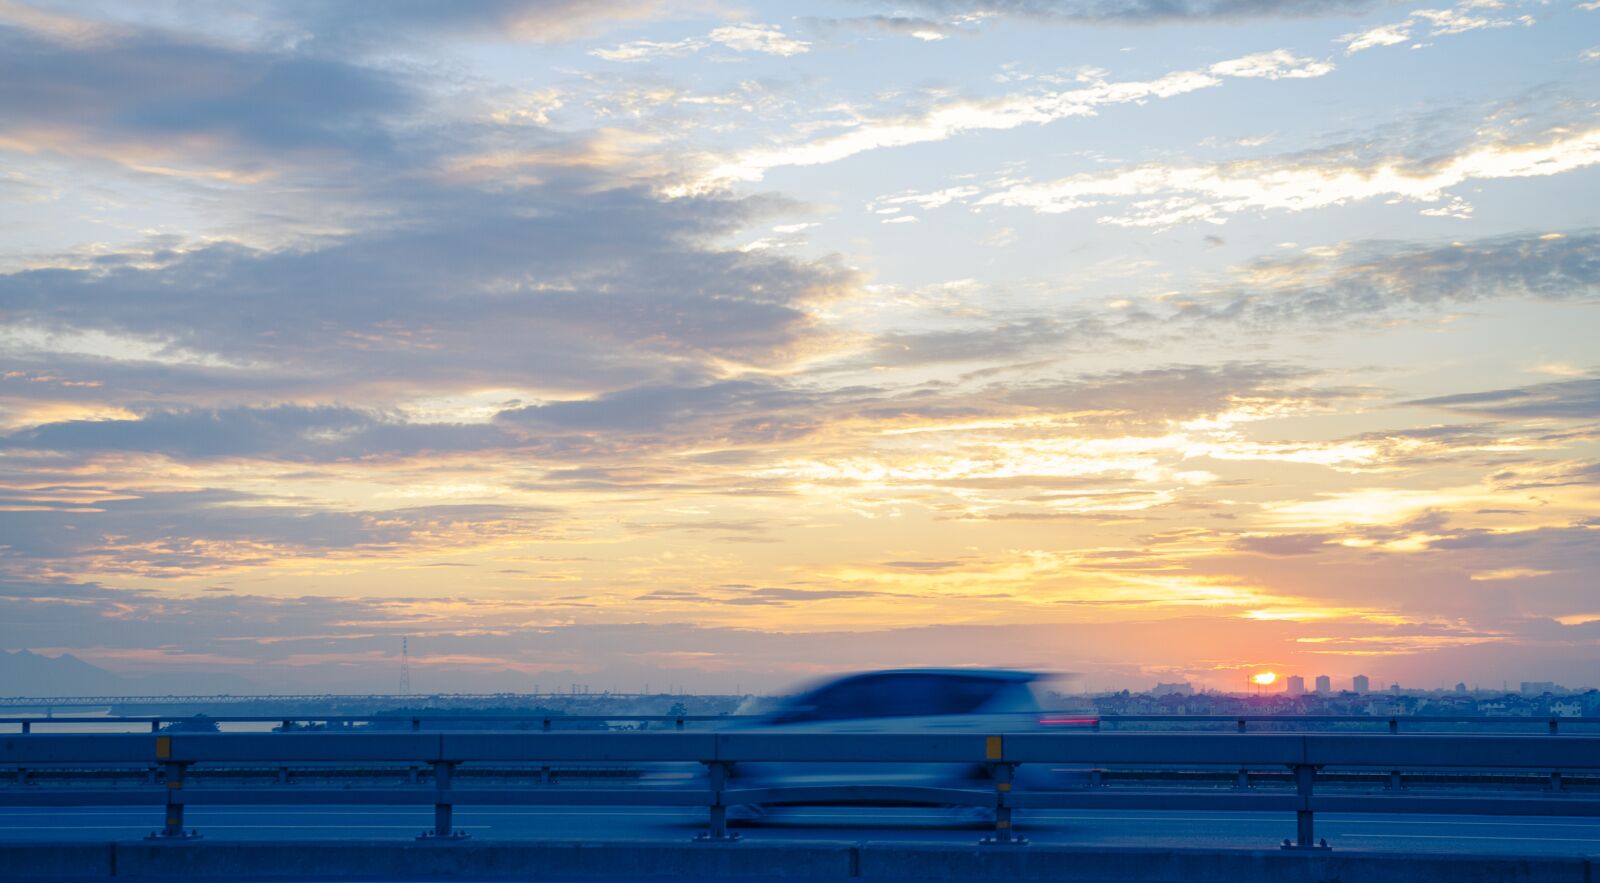 Nikon D700 sample photo. Cloud, sunset, car photography